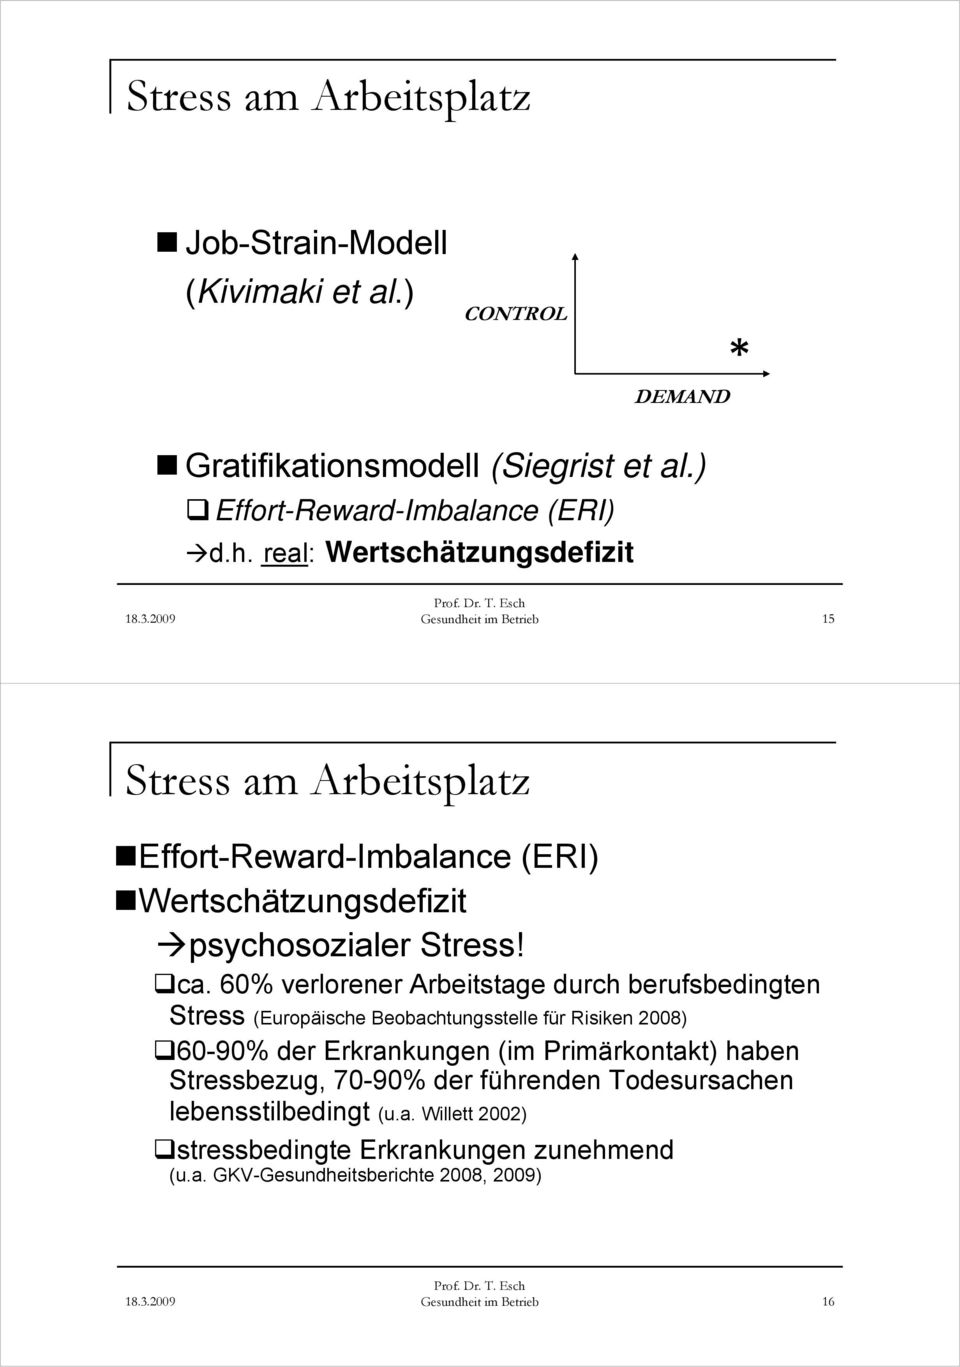 60% verlorener Arbeitstage durch berufsbedingten Stress (Europäische Beobachtungsstelle für Risiken 2008) 60-90% der Erkrankungen (im Primärkontakt) haben